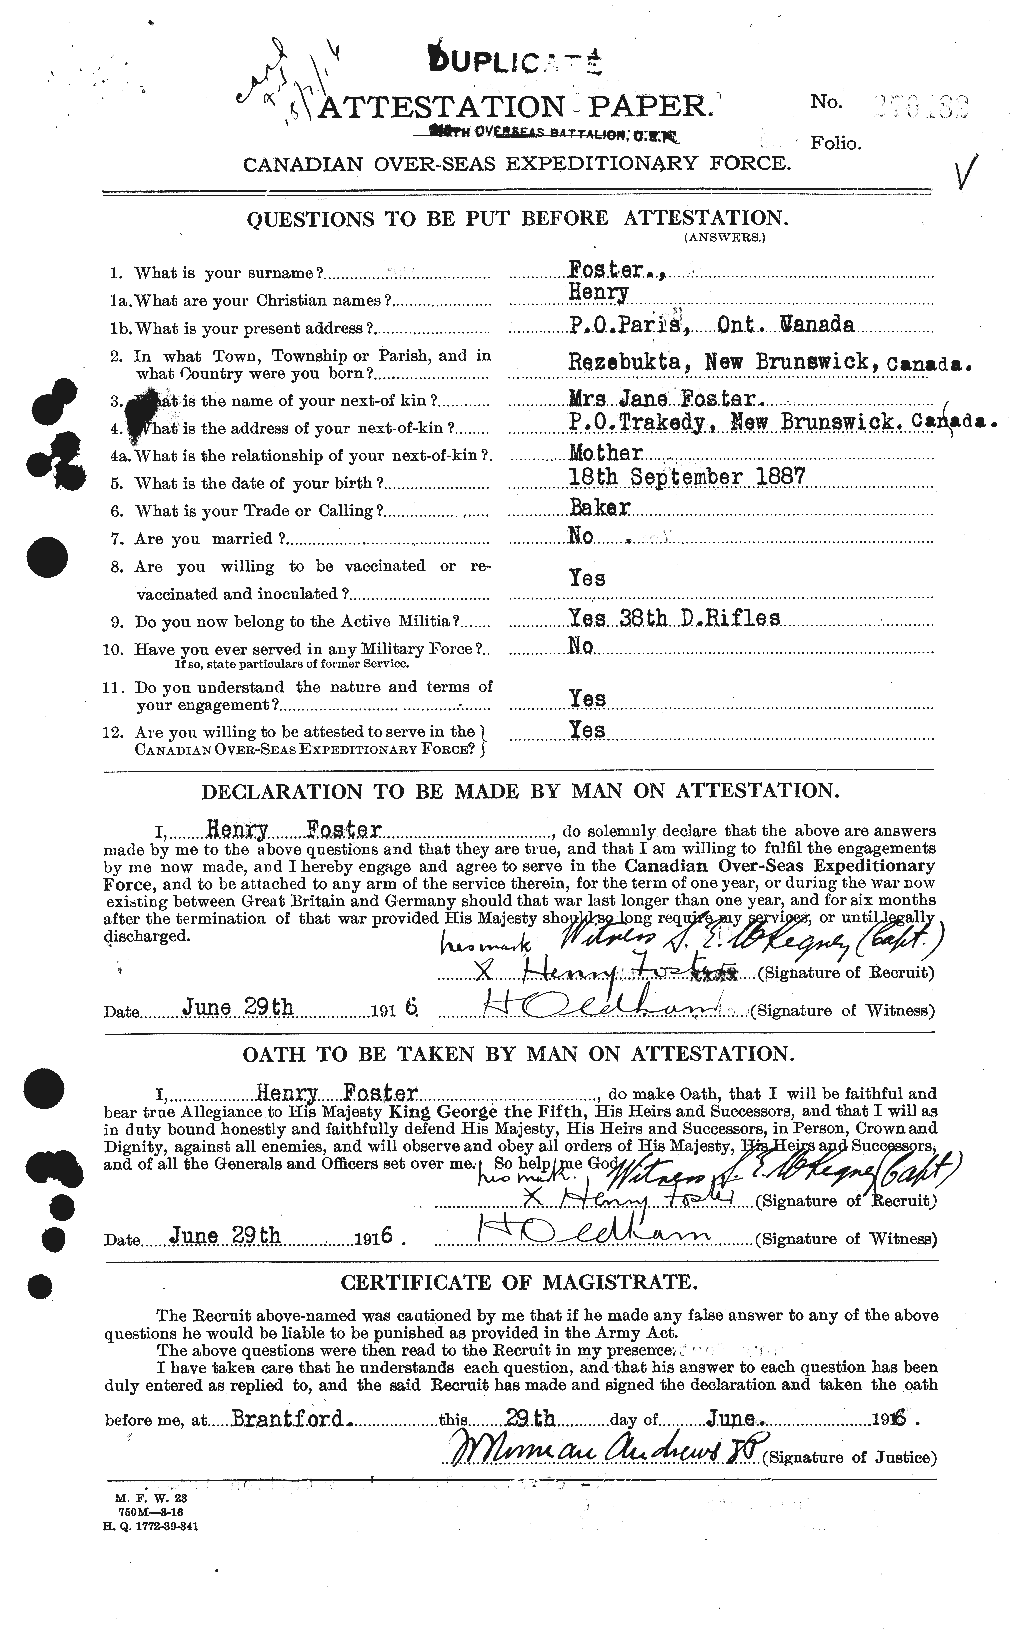 Dossiers du Personnel de la Première Guerre mondiale - CEC 333243a